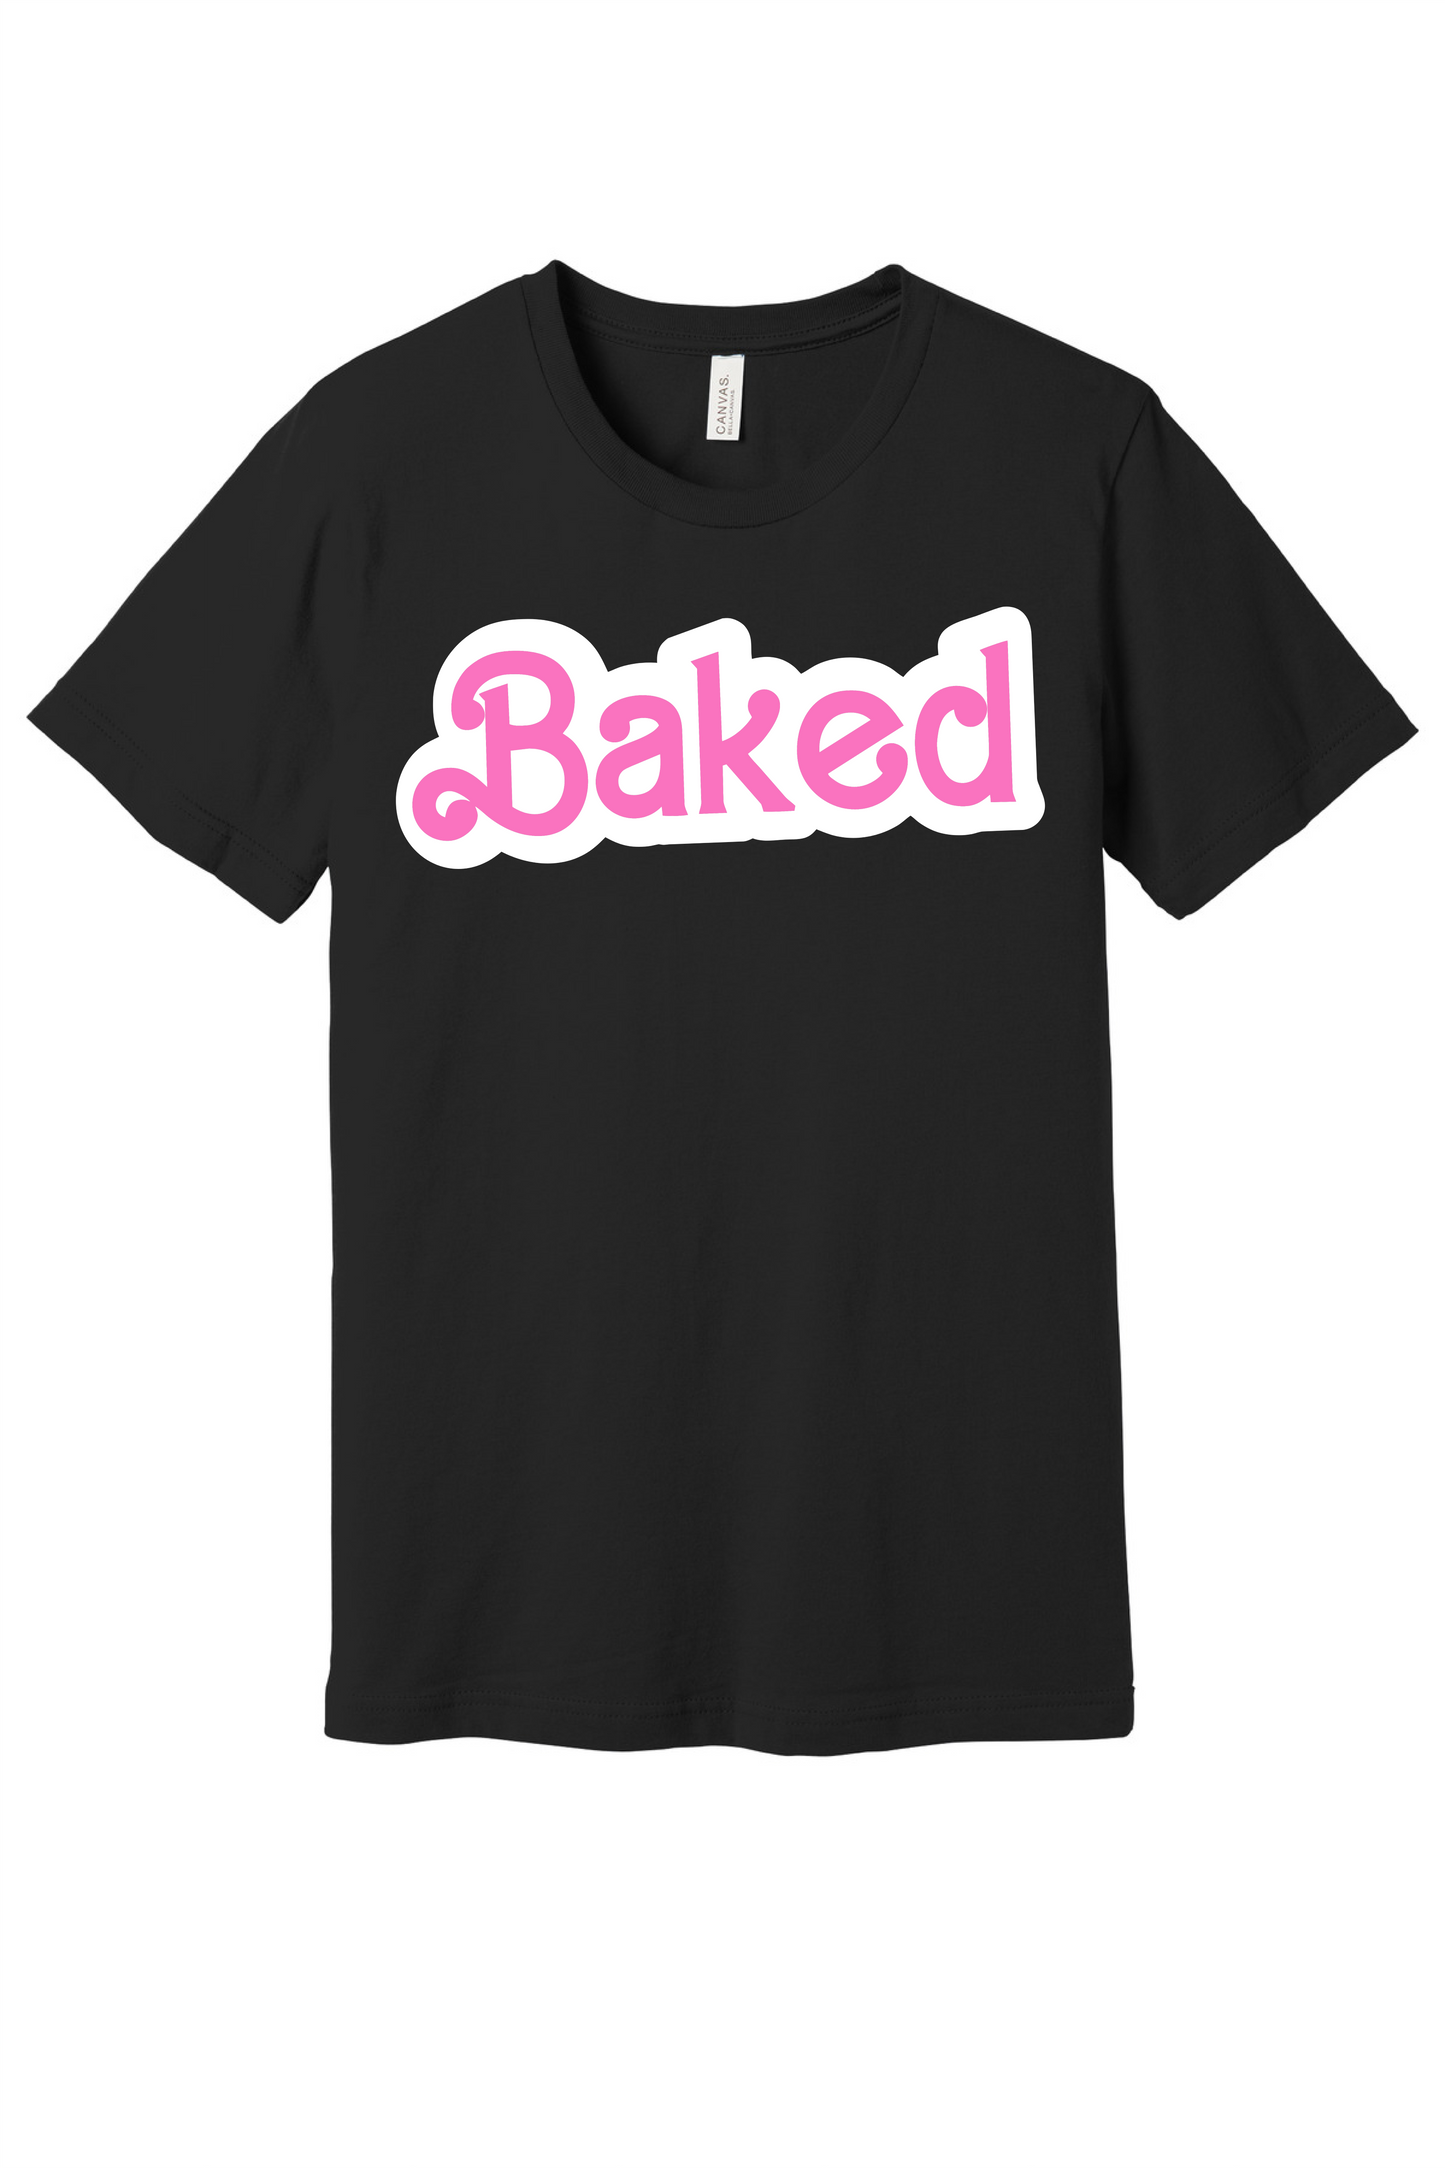 Baked like Barbie